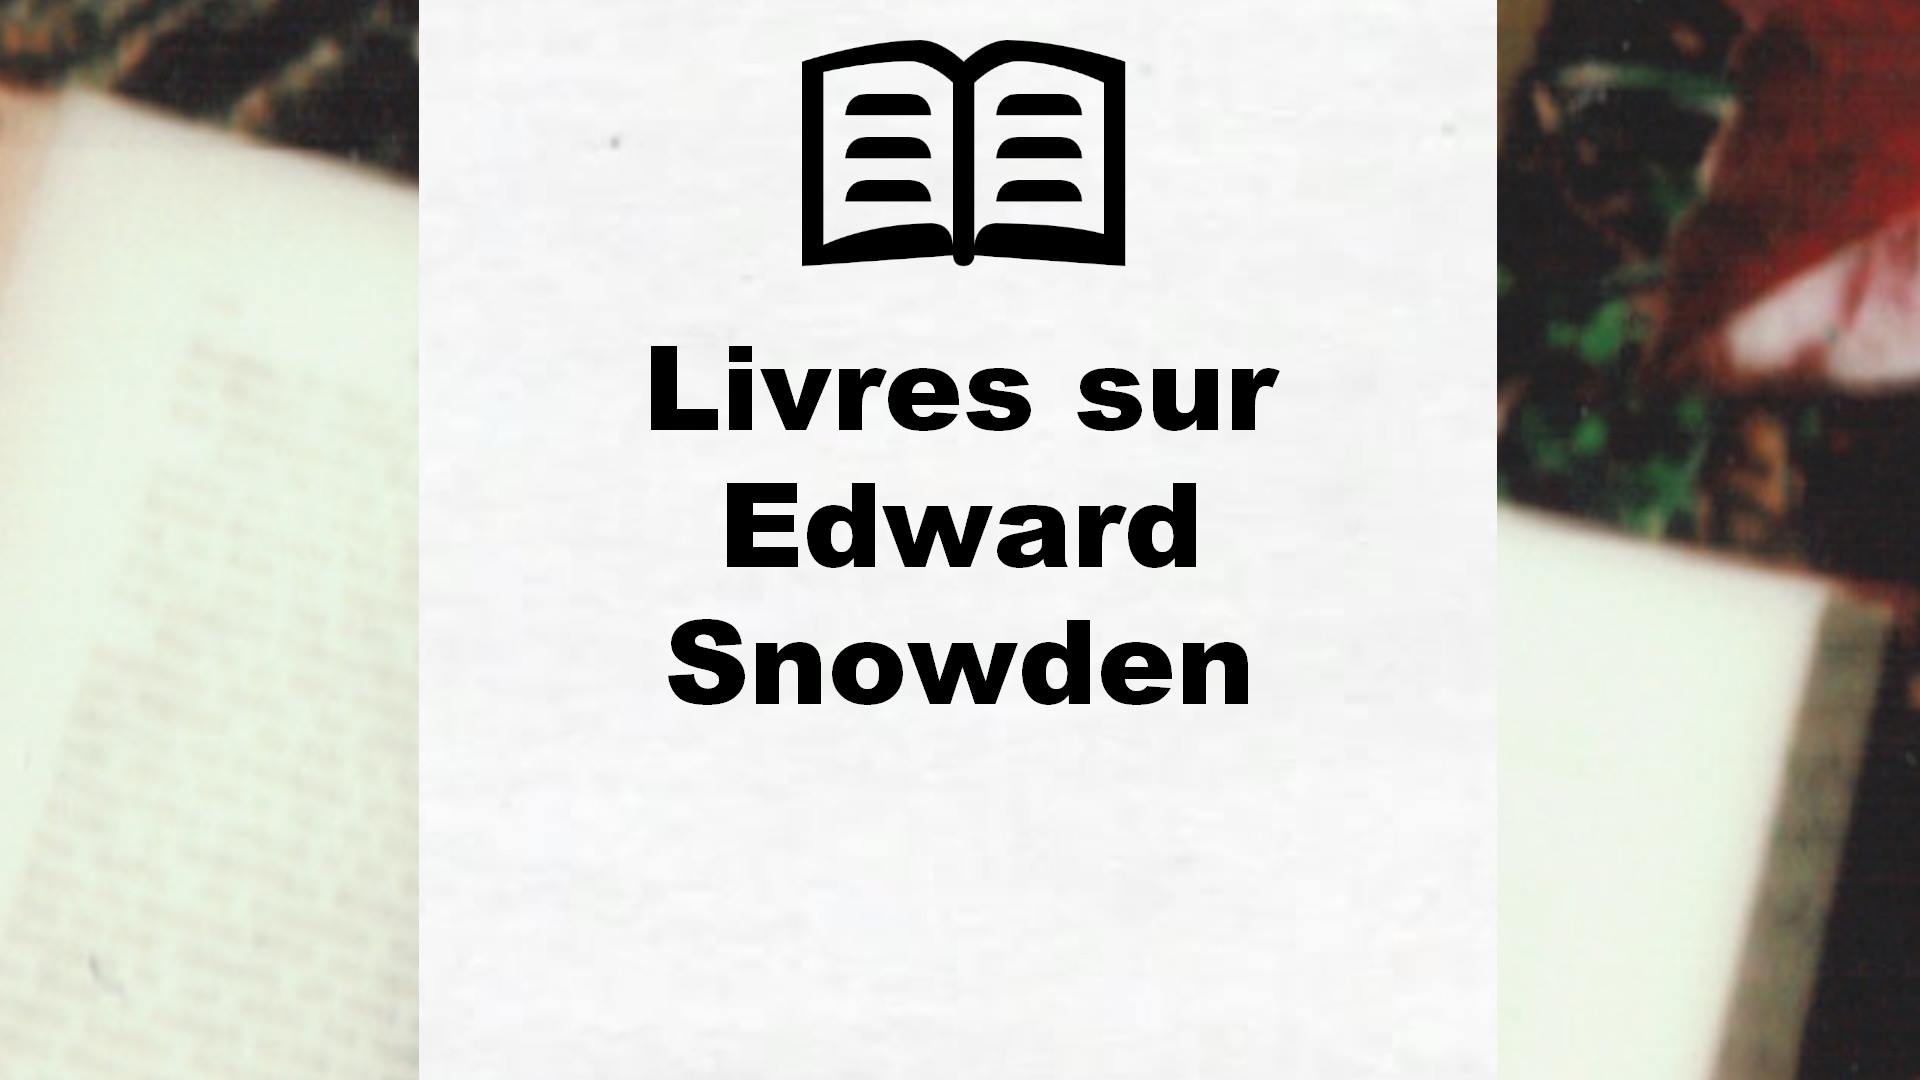 Livres sur Edward Snowden